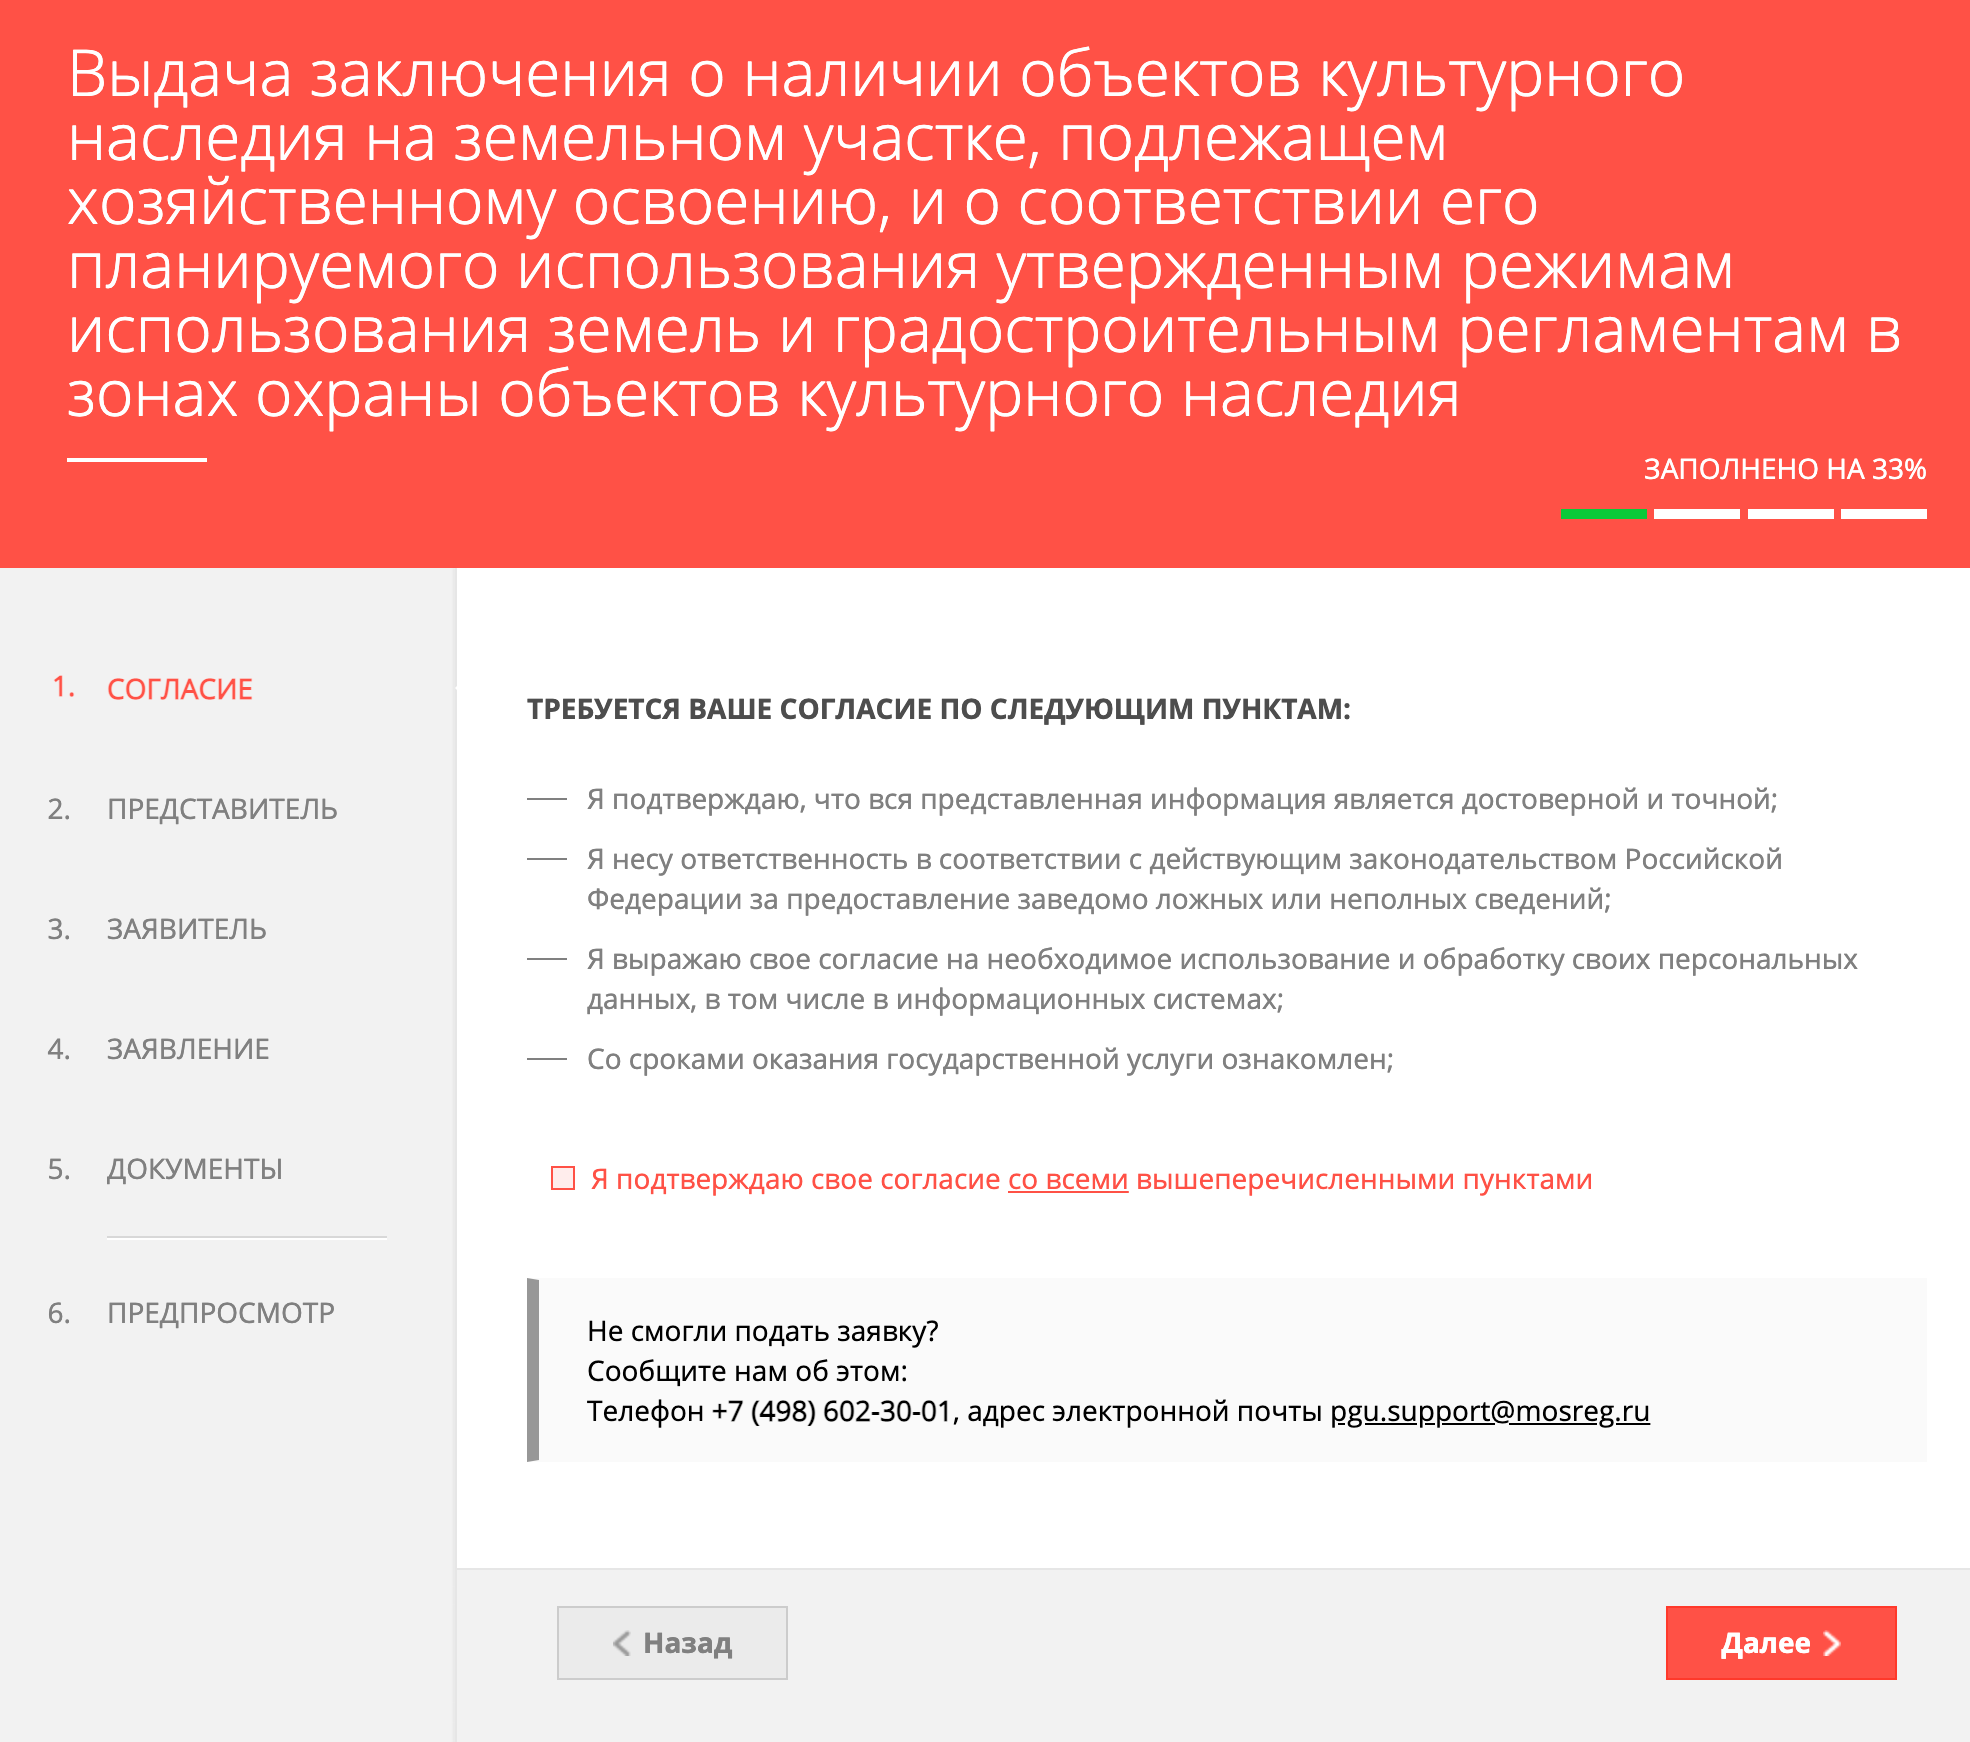 Заявление подается онлайн на портале госуслуг региона. Источник: mosreg.ru